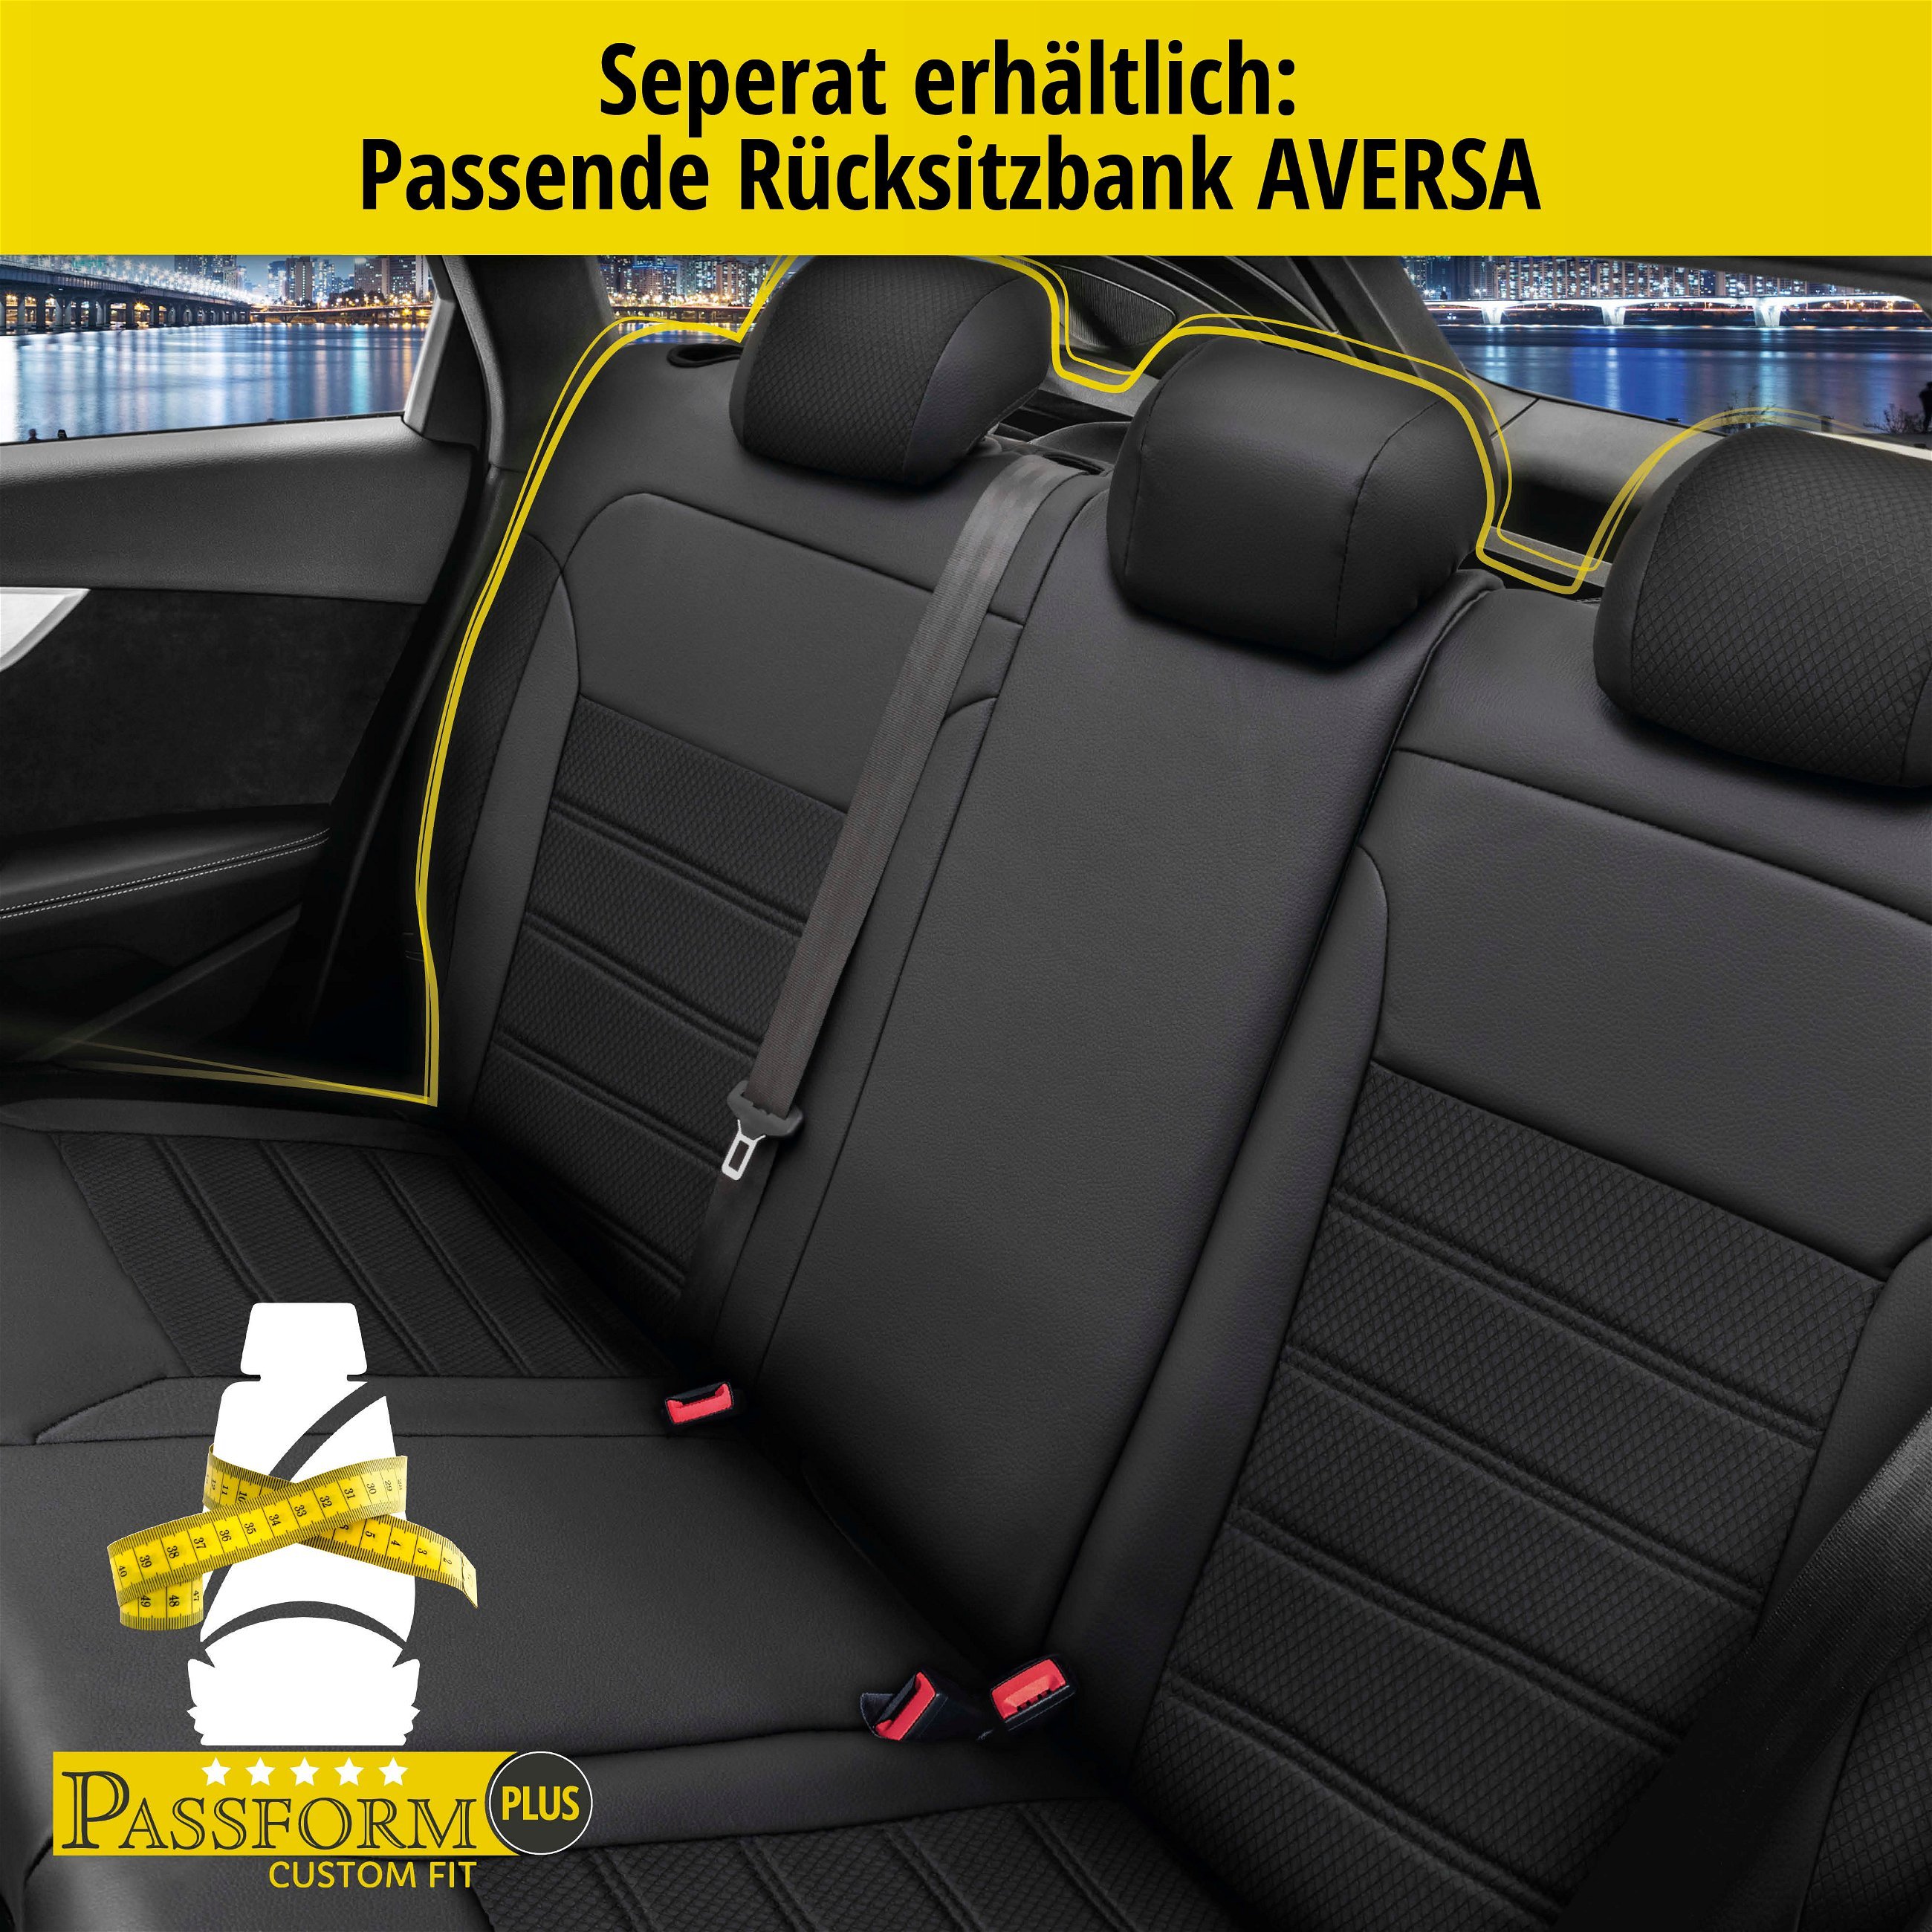 Passform Sitzbezug Aversa für VW Golf VII Comfortline 08/2012-03/2021, 2 Einzelsitzbezüge für Normalsitze